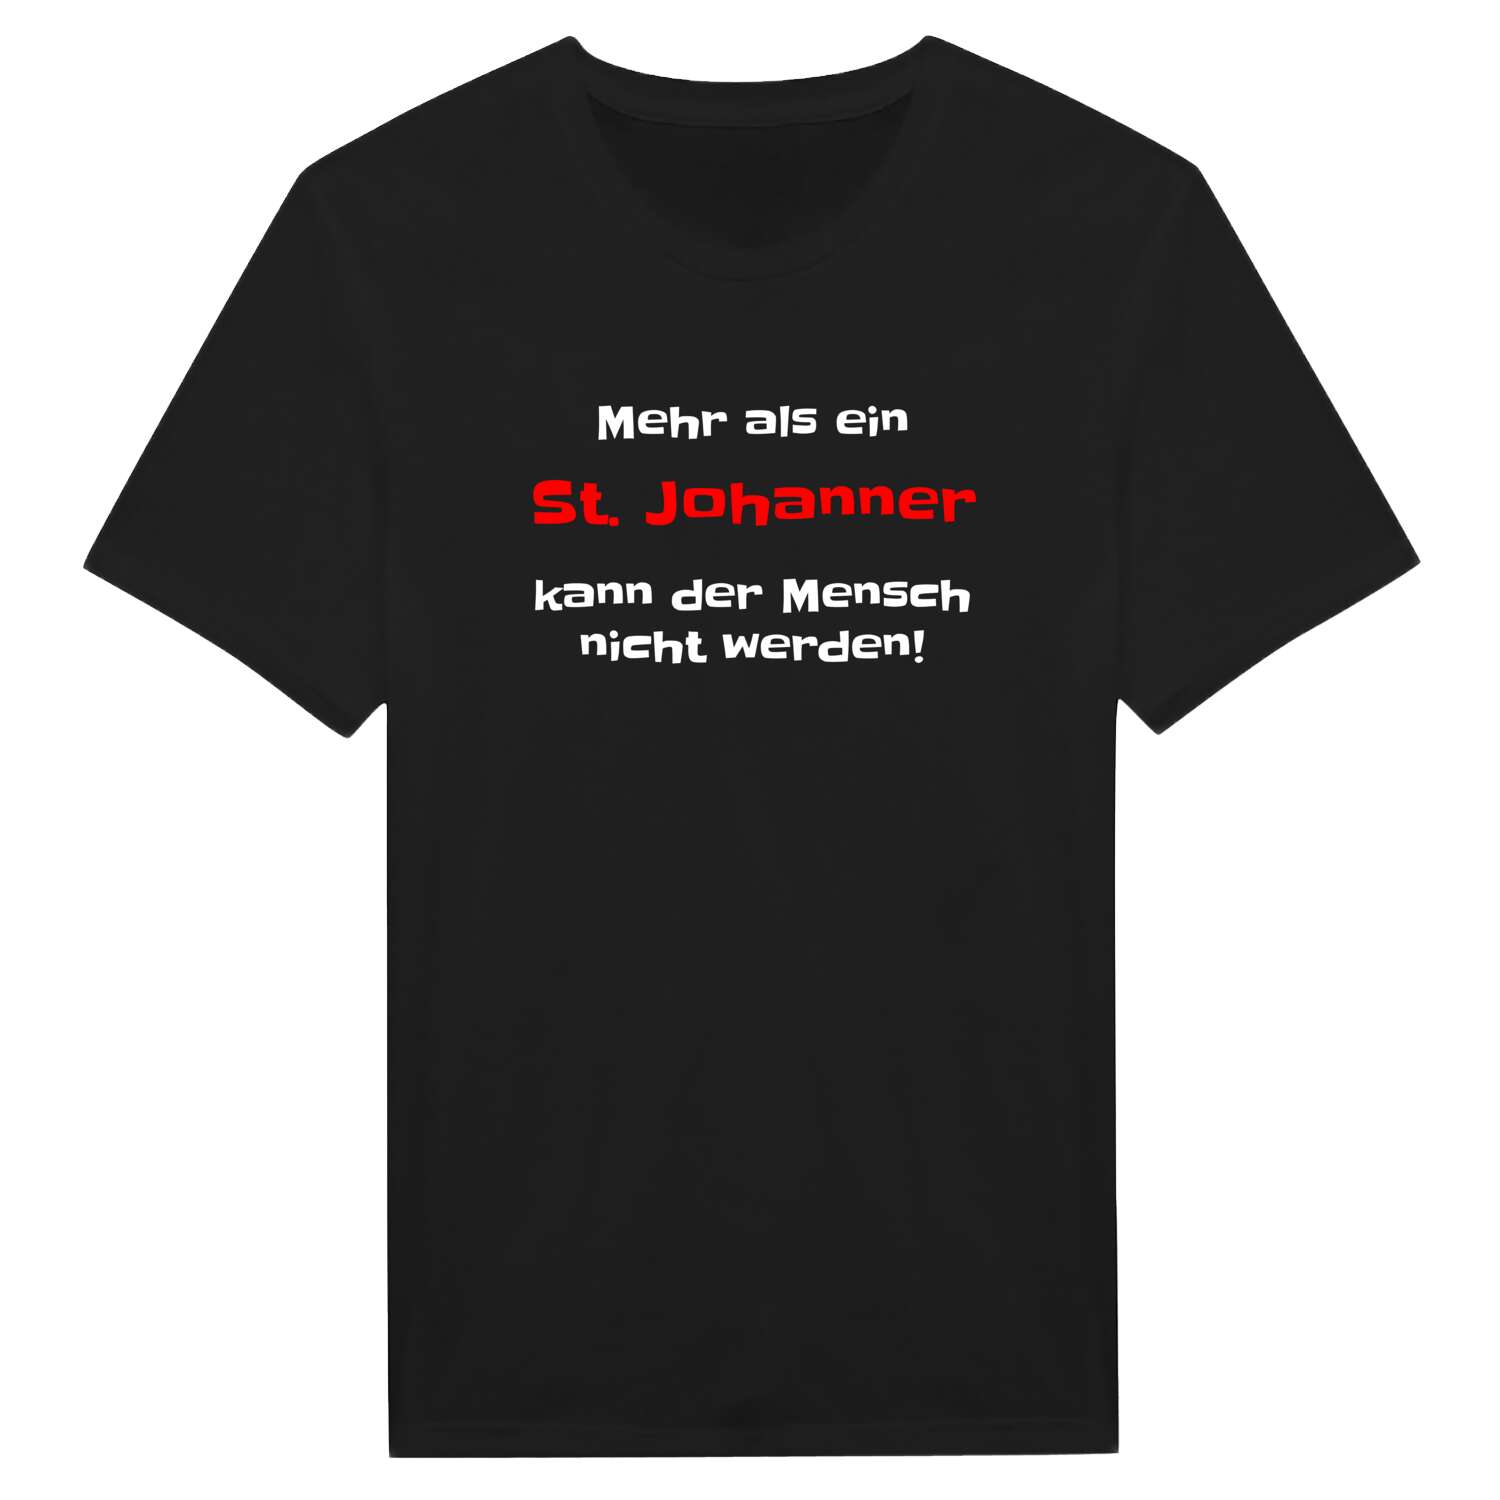 St. Johann T-Shirt »Mehr als ein«